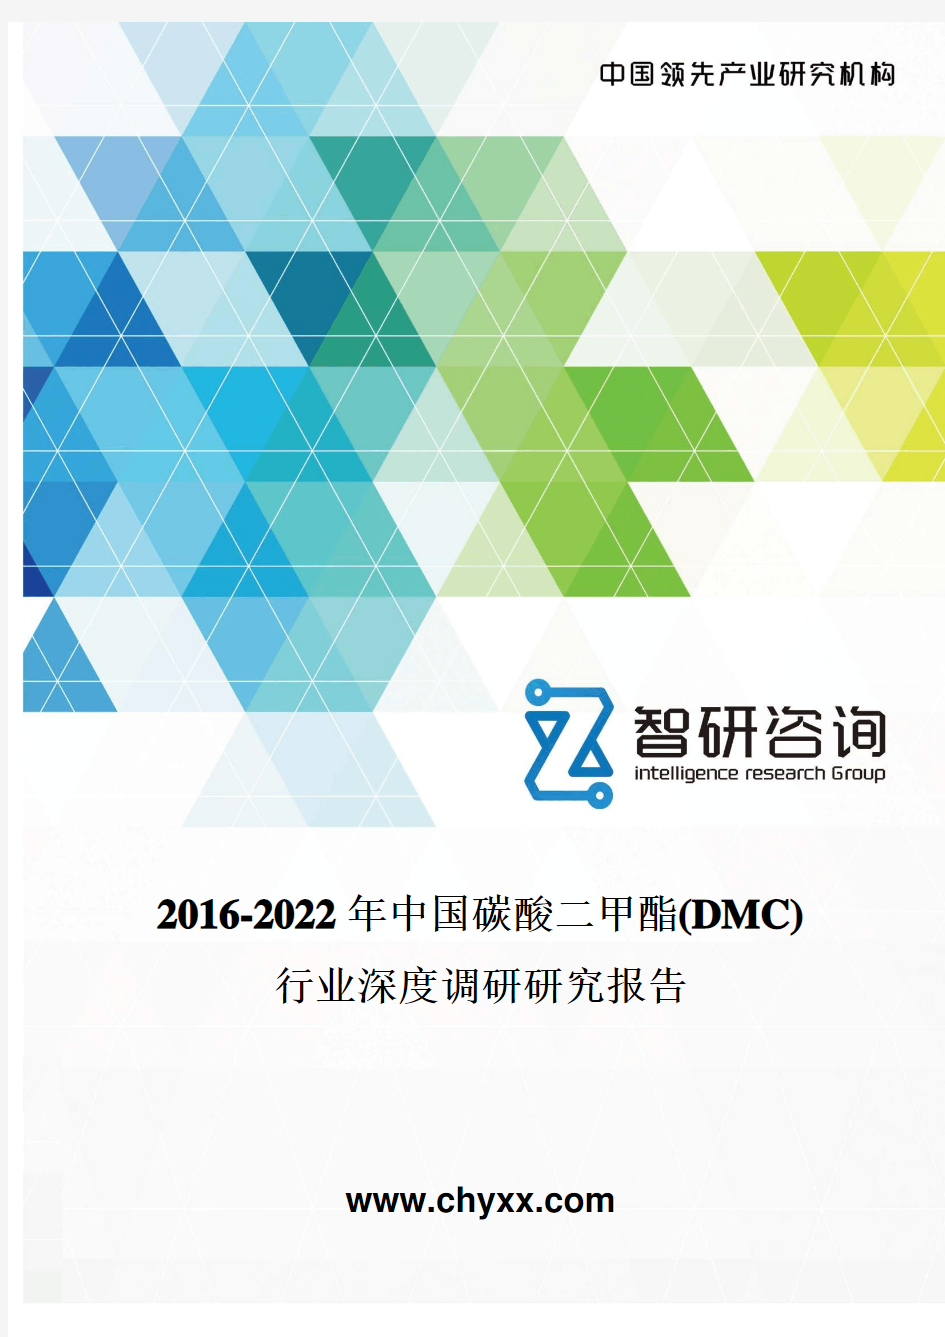 2016-2022年中国碳酸二甲酯(DMC)行业深度调研研究报告